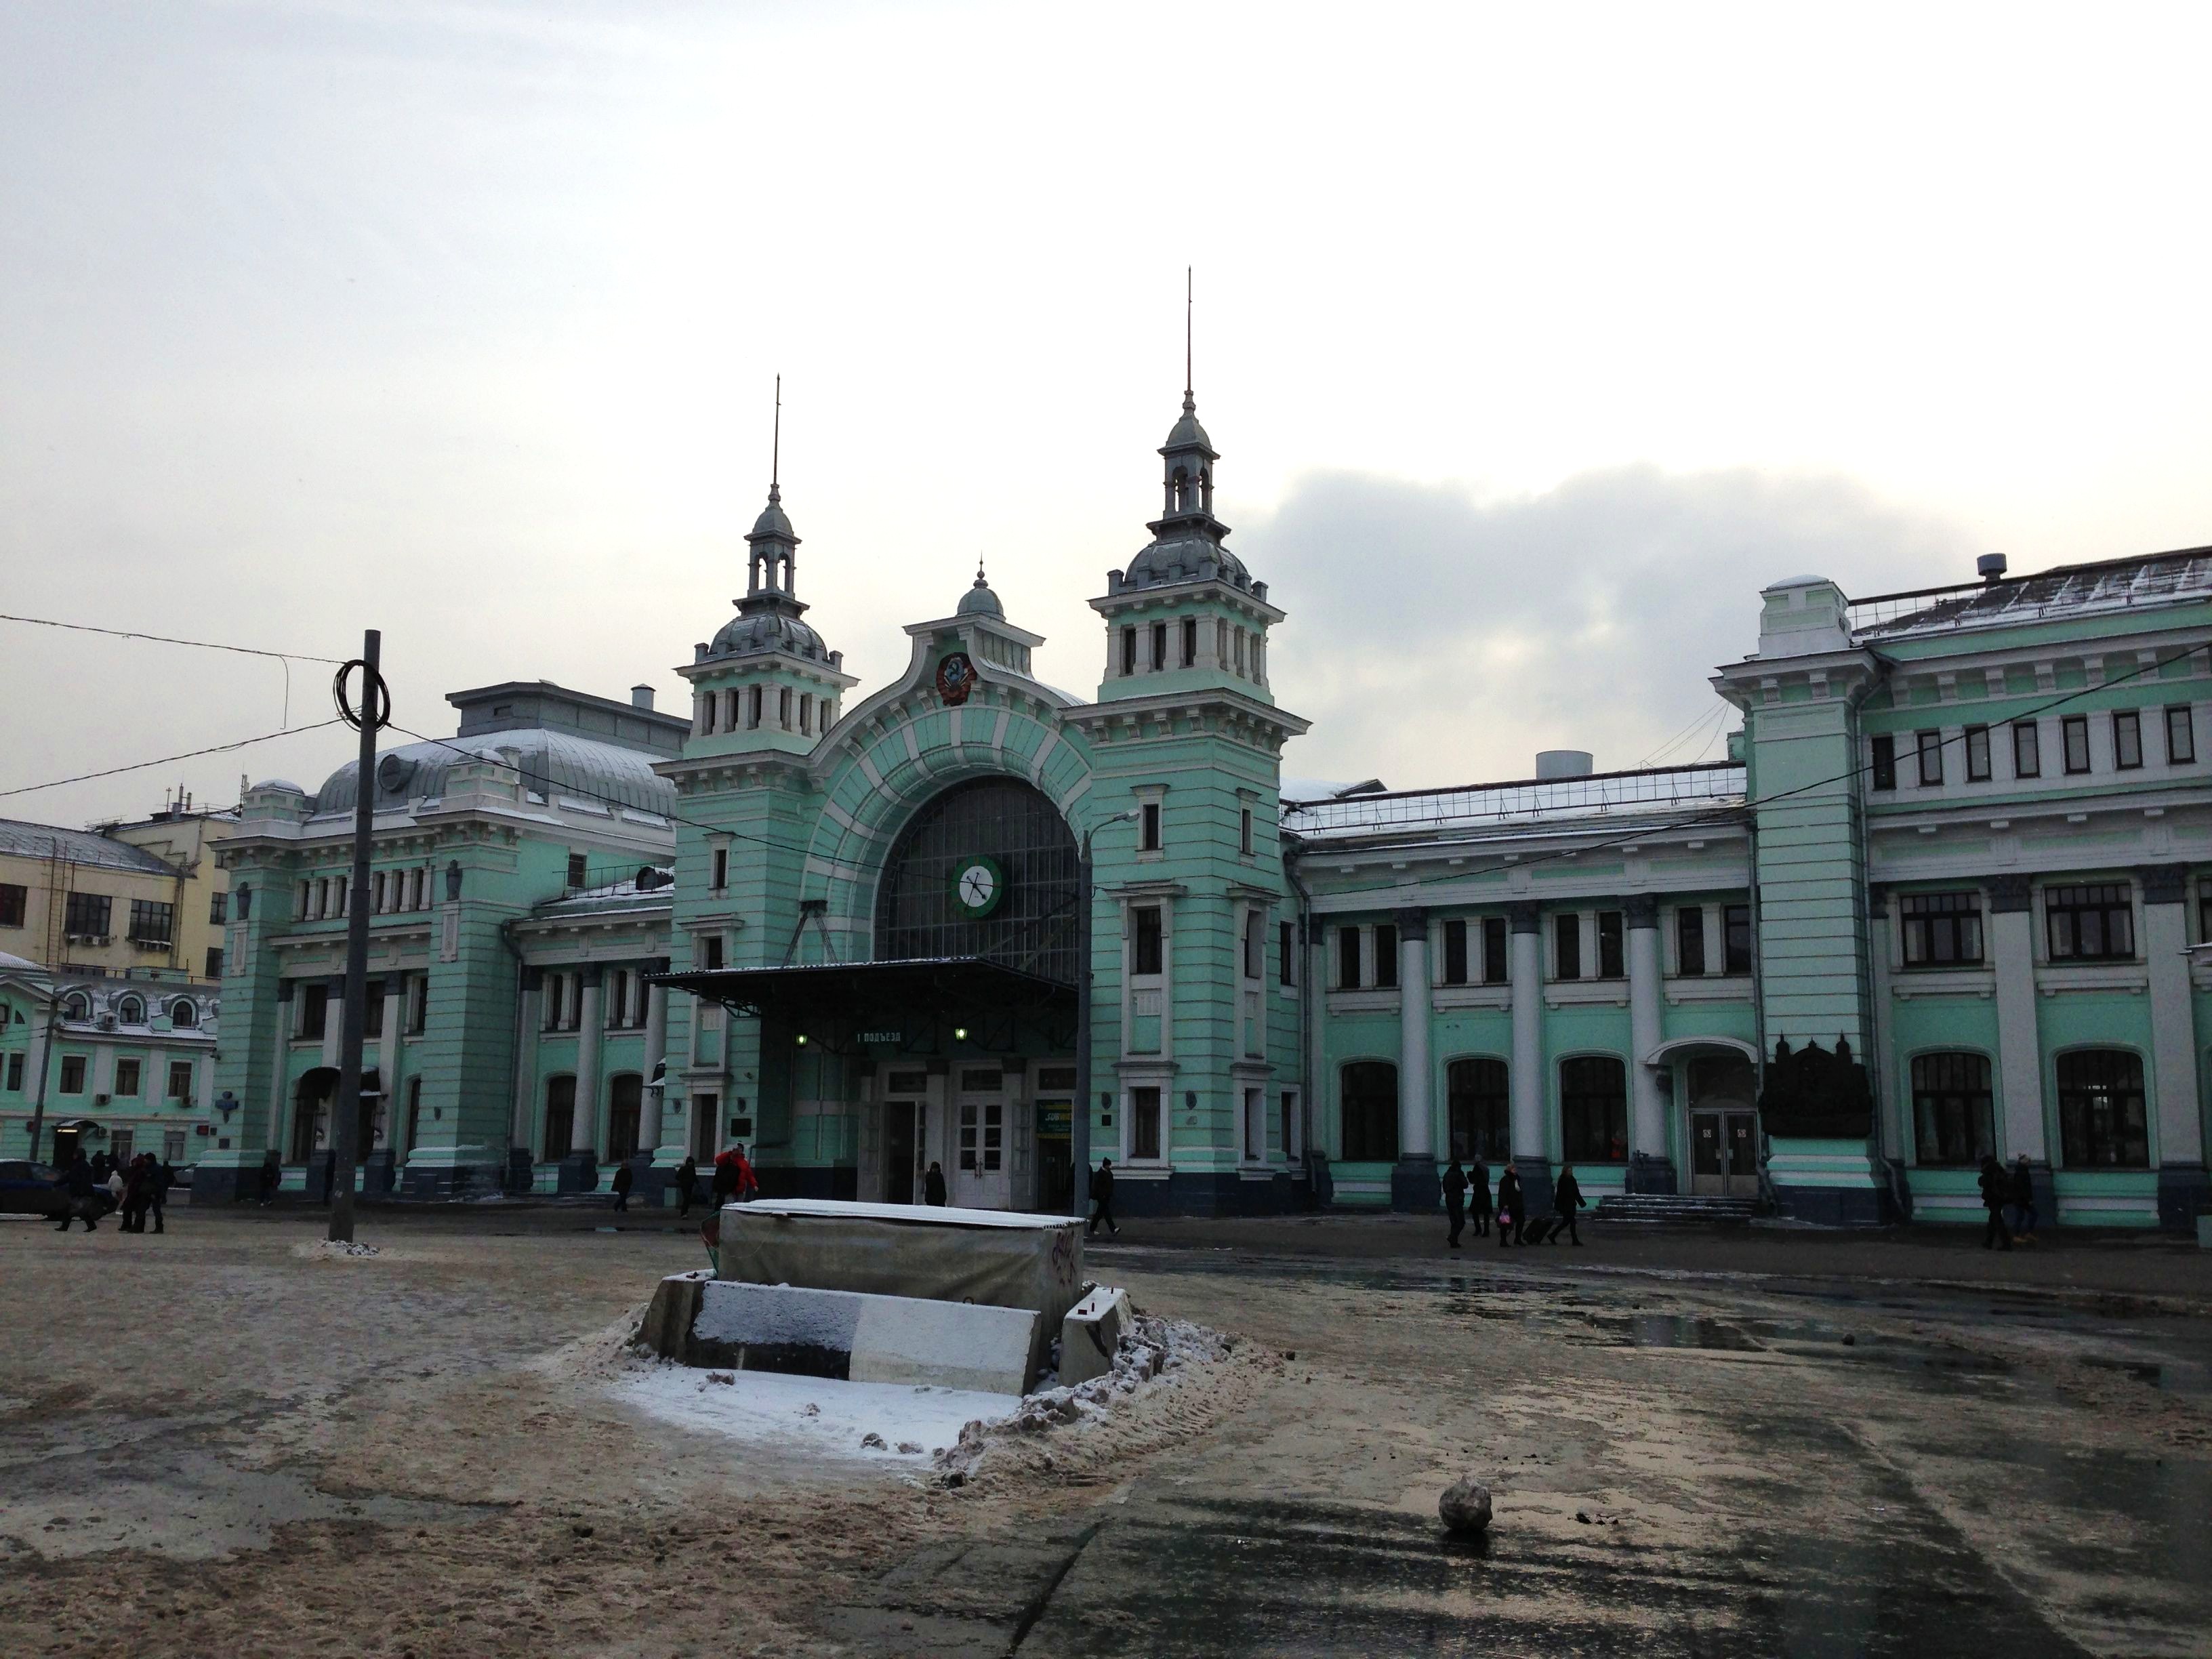 Het Belorussky Station in Moskou, waar we aankwamen